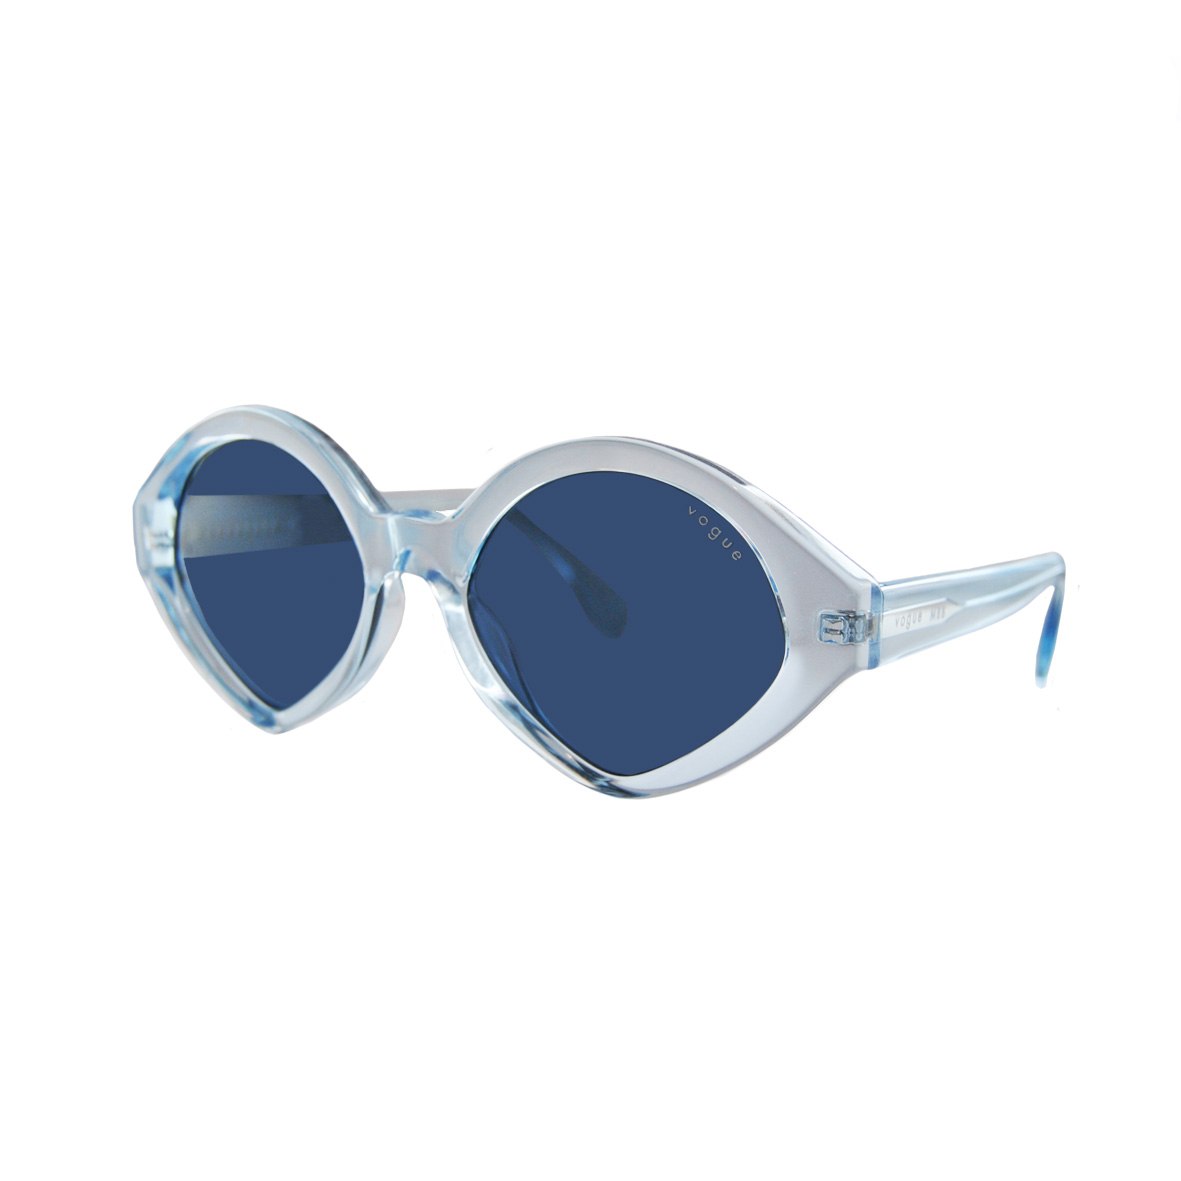 Солнцезащитные очки Vogue модель 5394S                            -30%